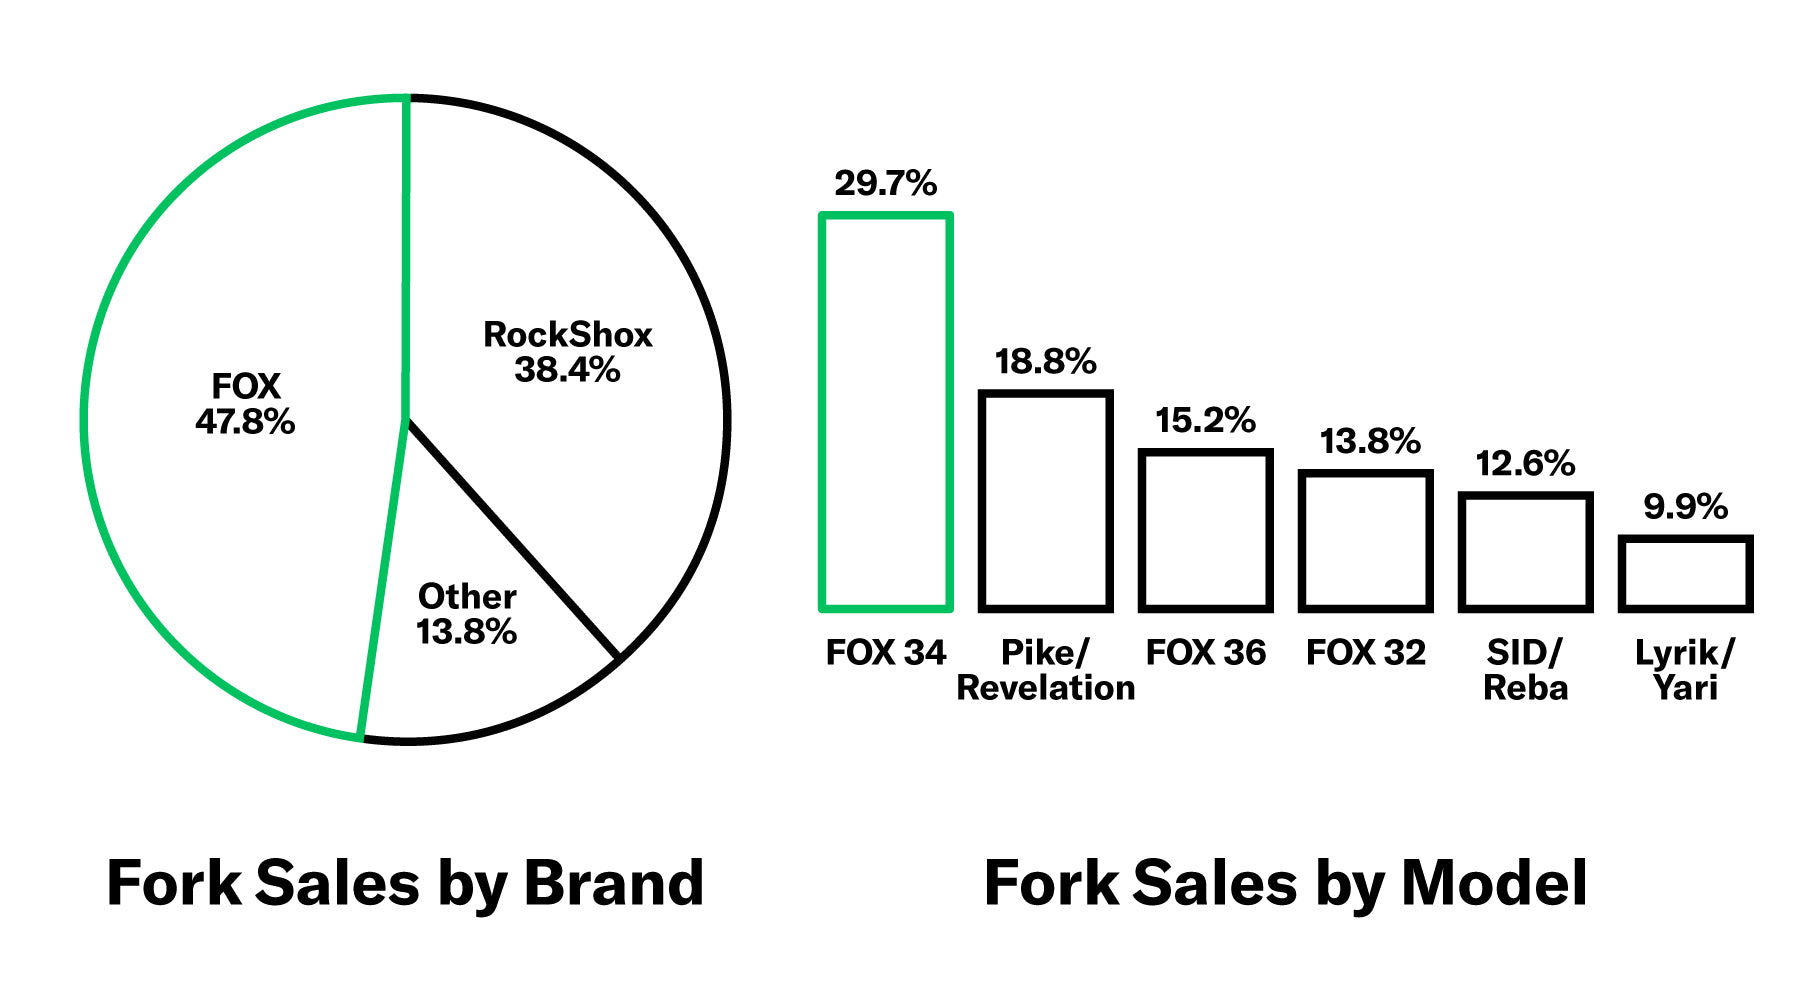 Fox vs RockShox fork sales